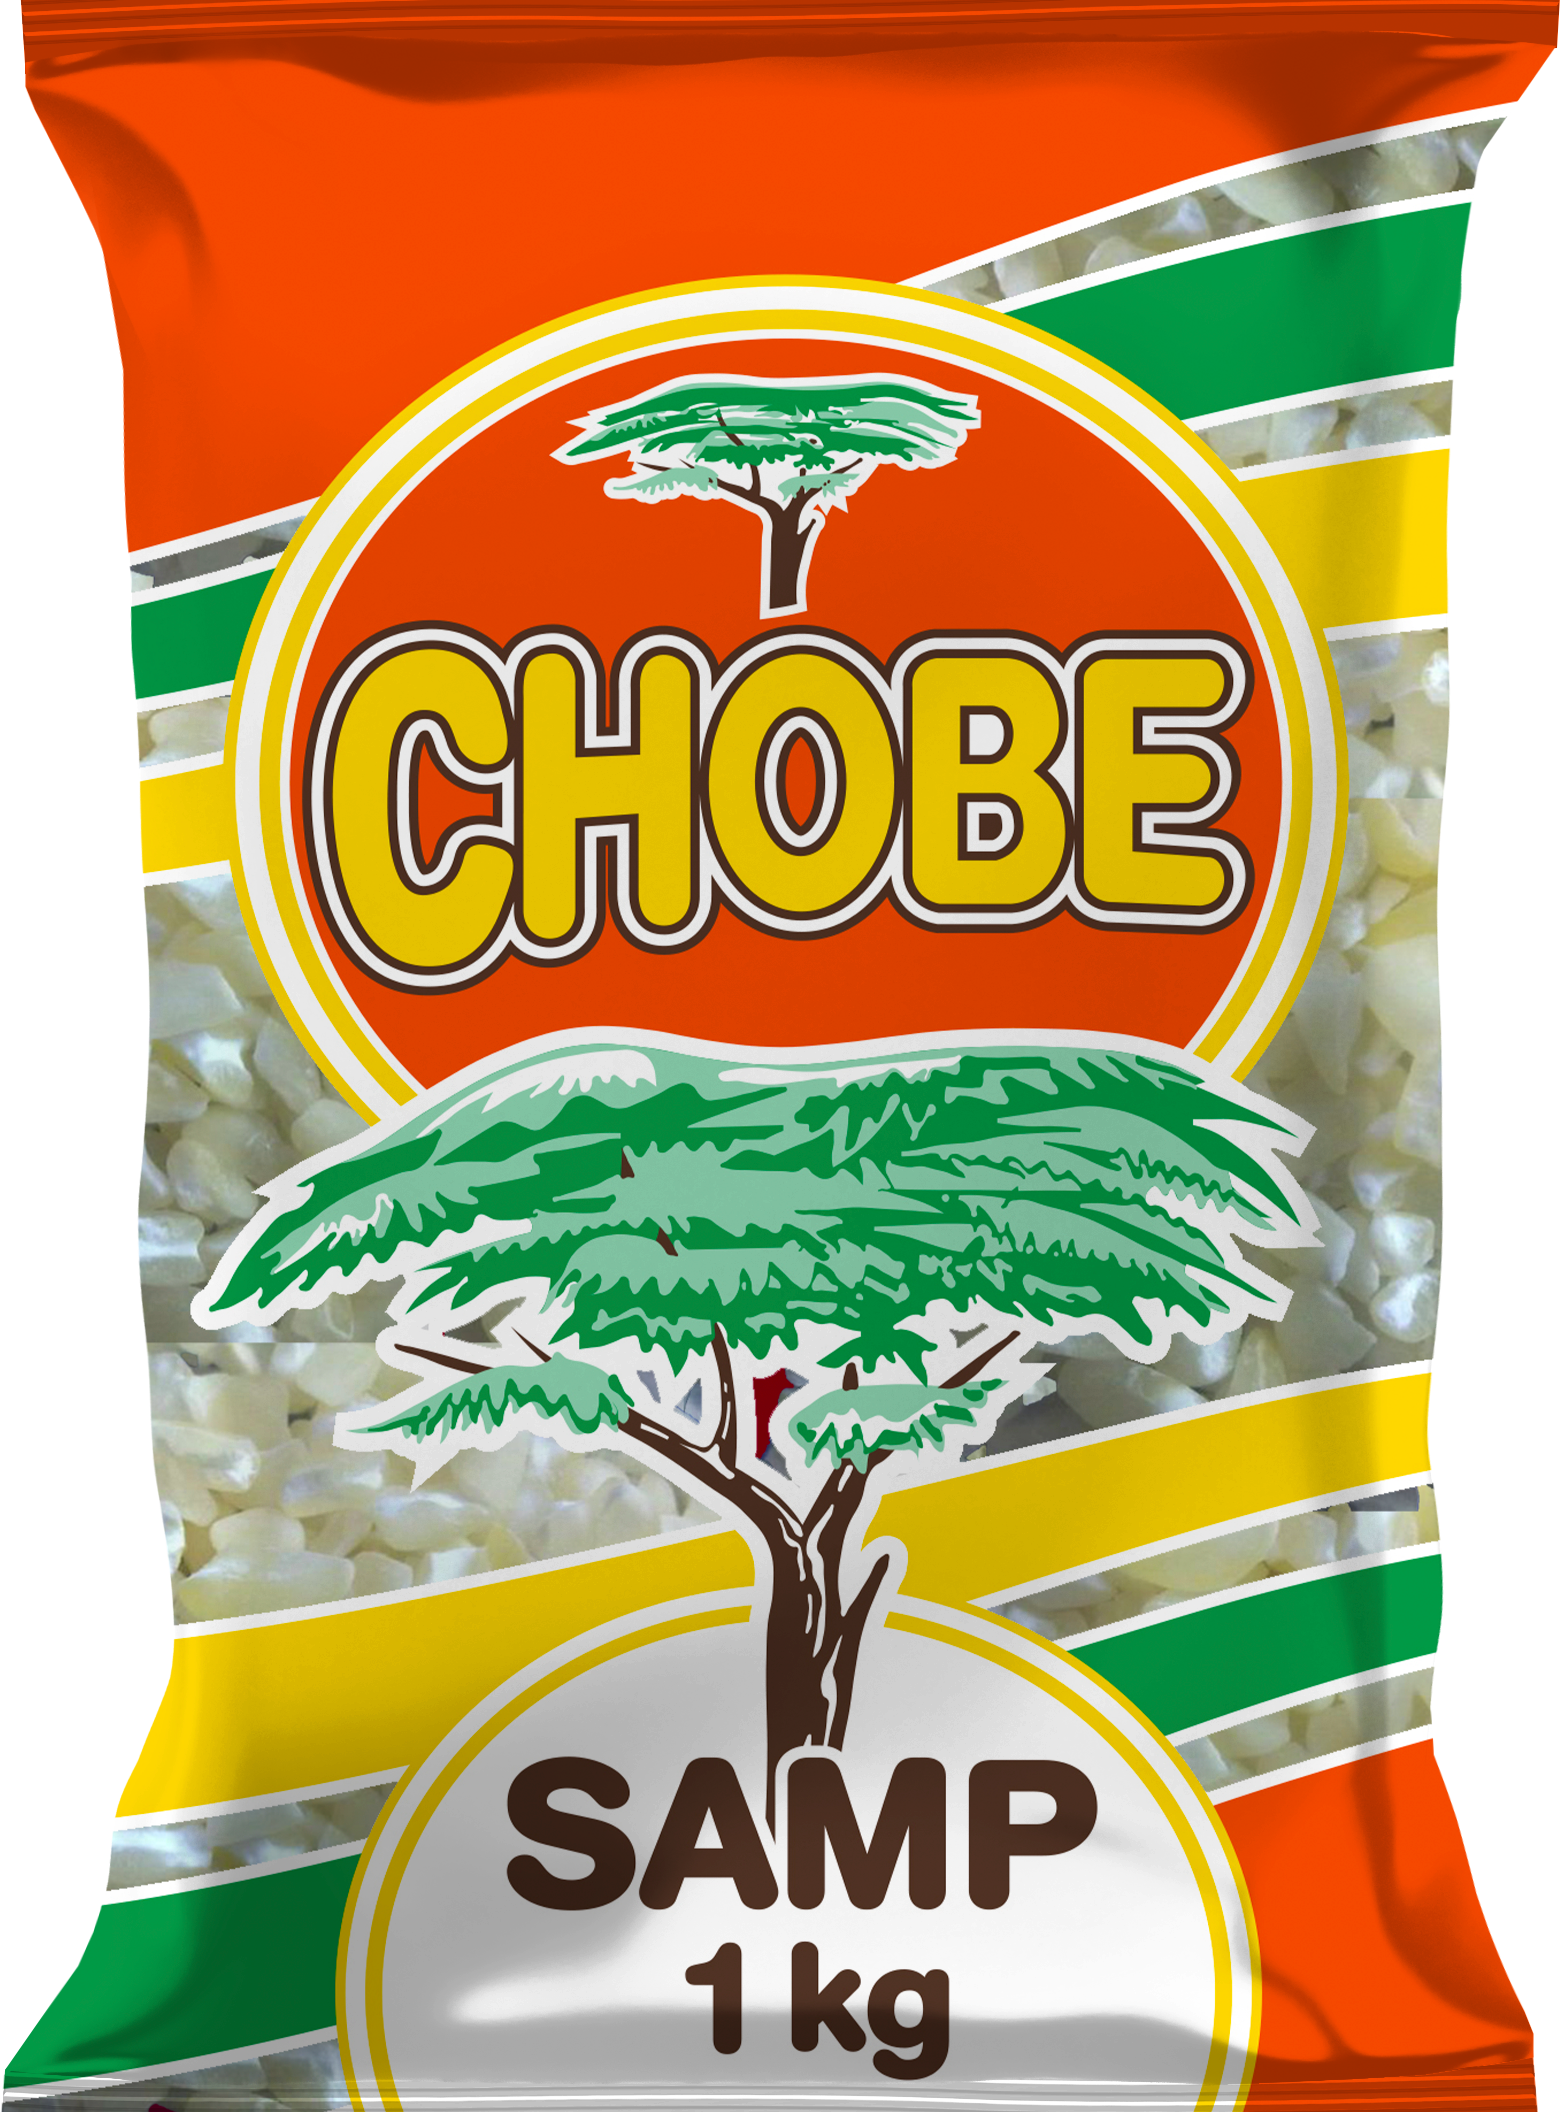 Chobe Samp 1 Kg